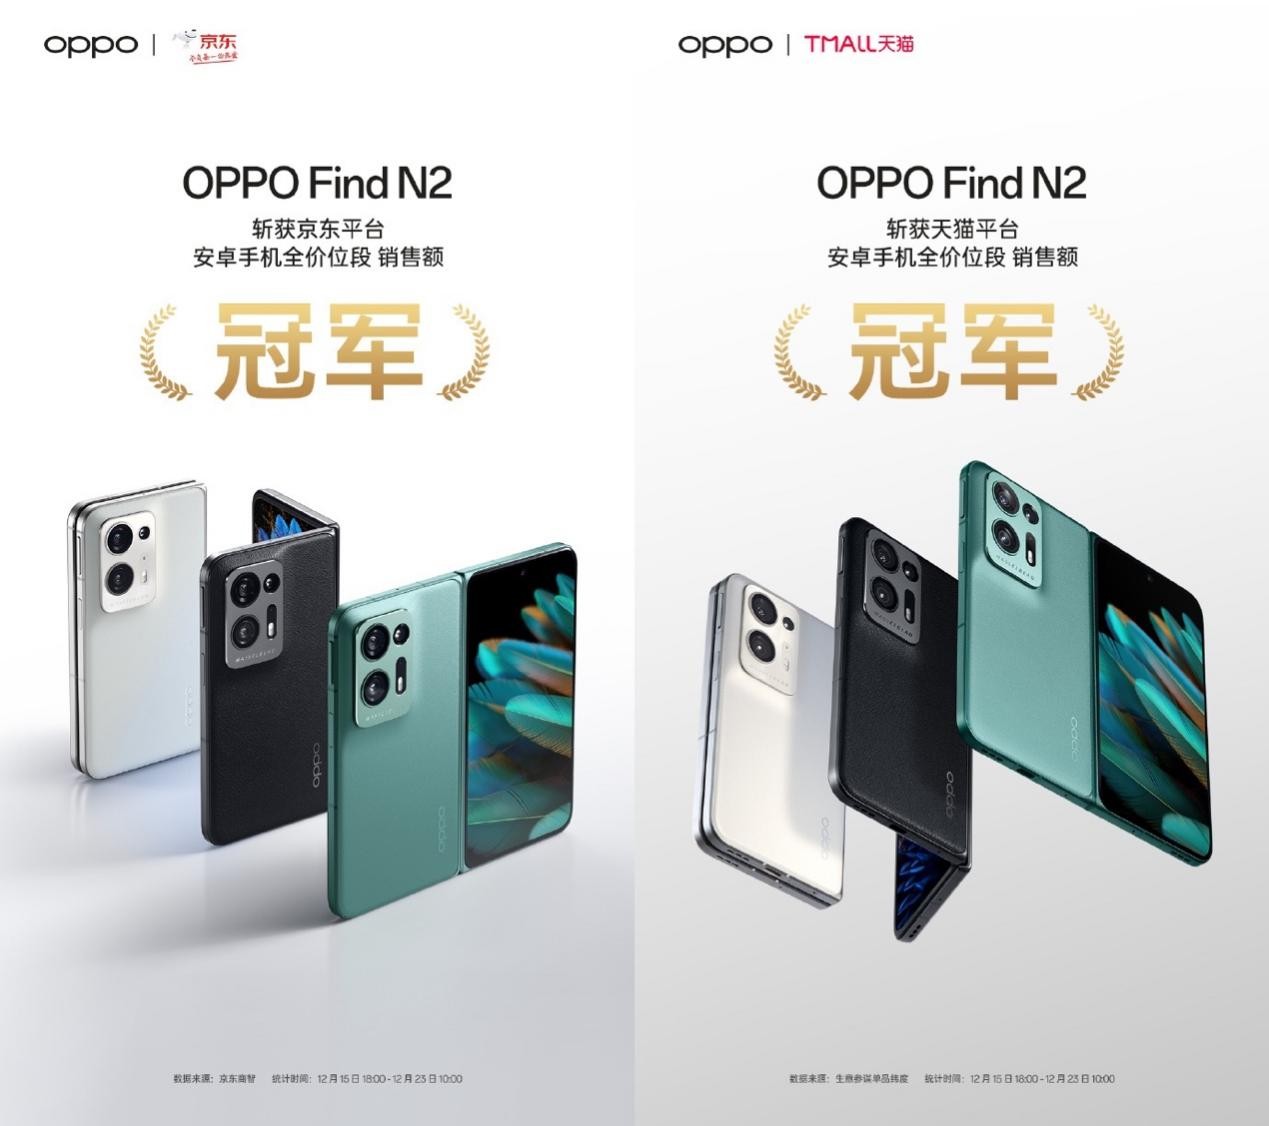 斩获销售额冠军!OPPO Find N2正式开售，超轻折叠设计革新体验